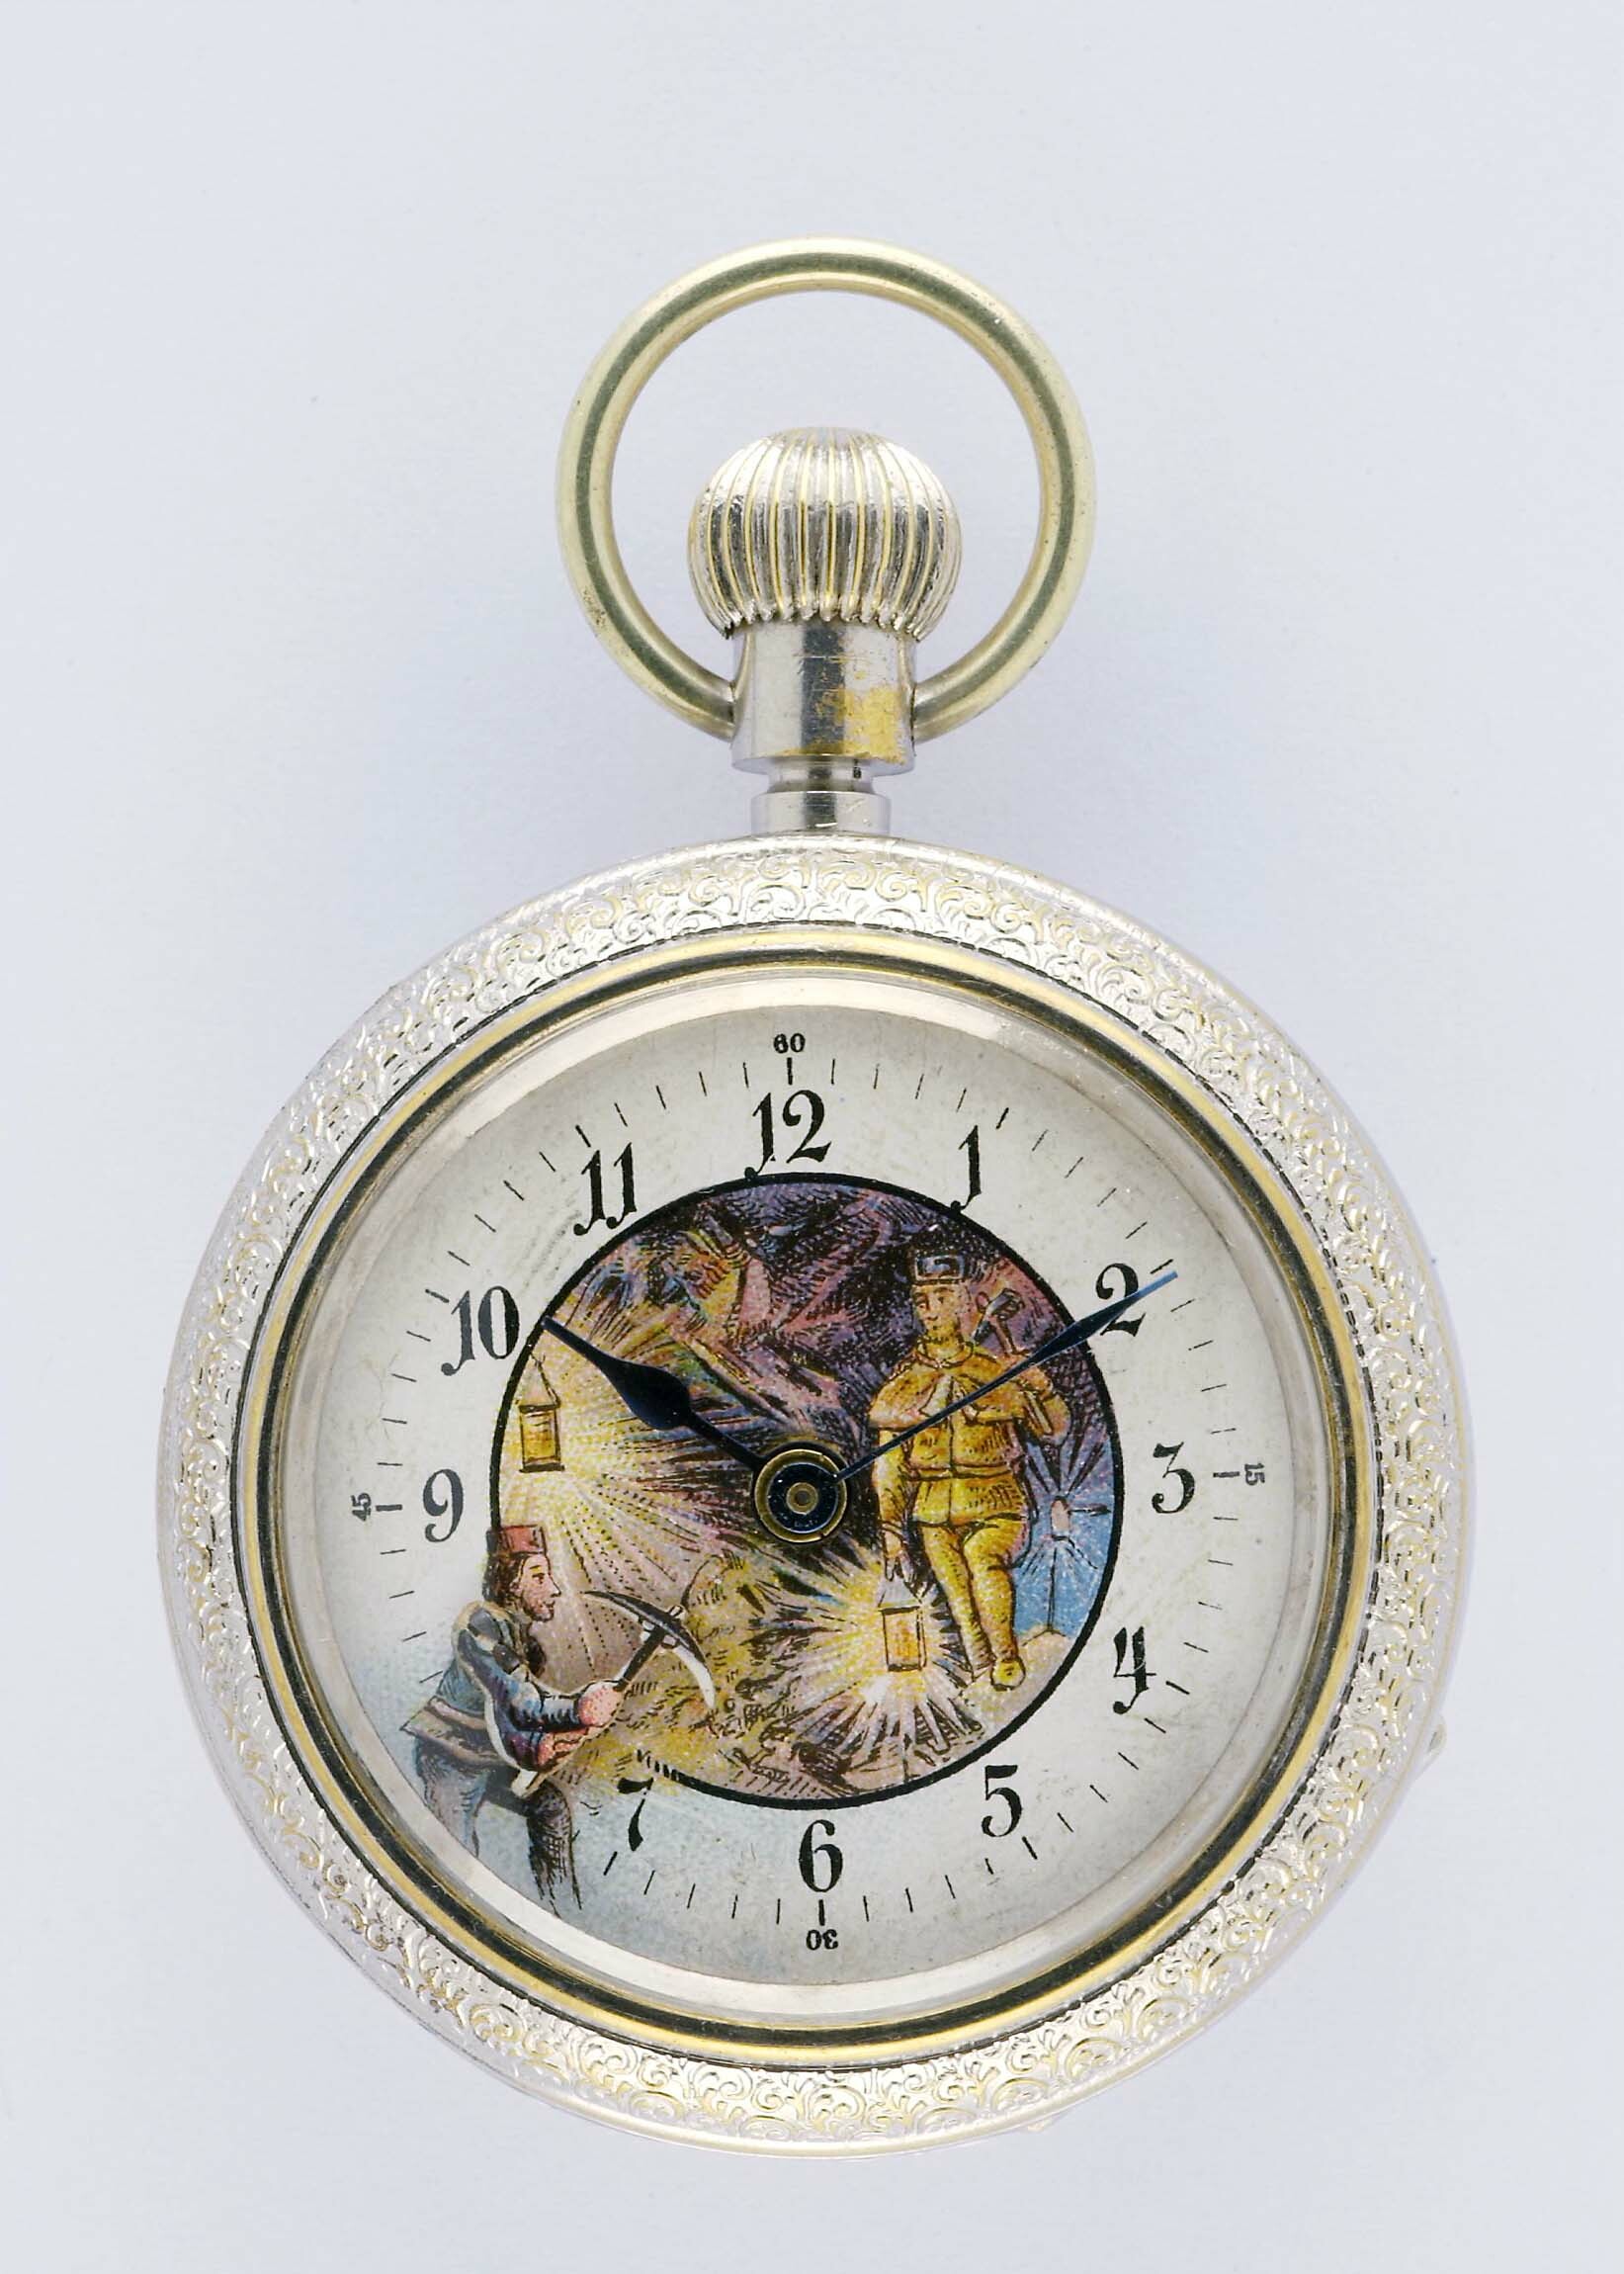 Taschenuhr mit Automat, Gebrüder Thiel, Ruhla um 1900 (Deutsches Uhrenmuseum CC BY-SA)